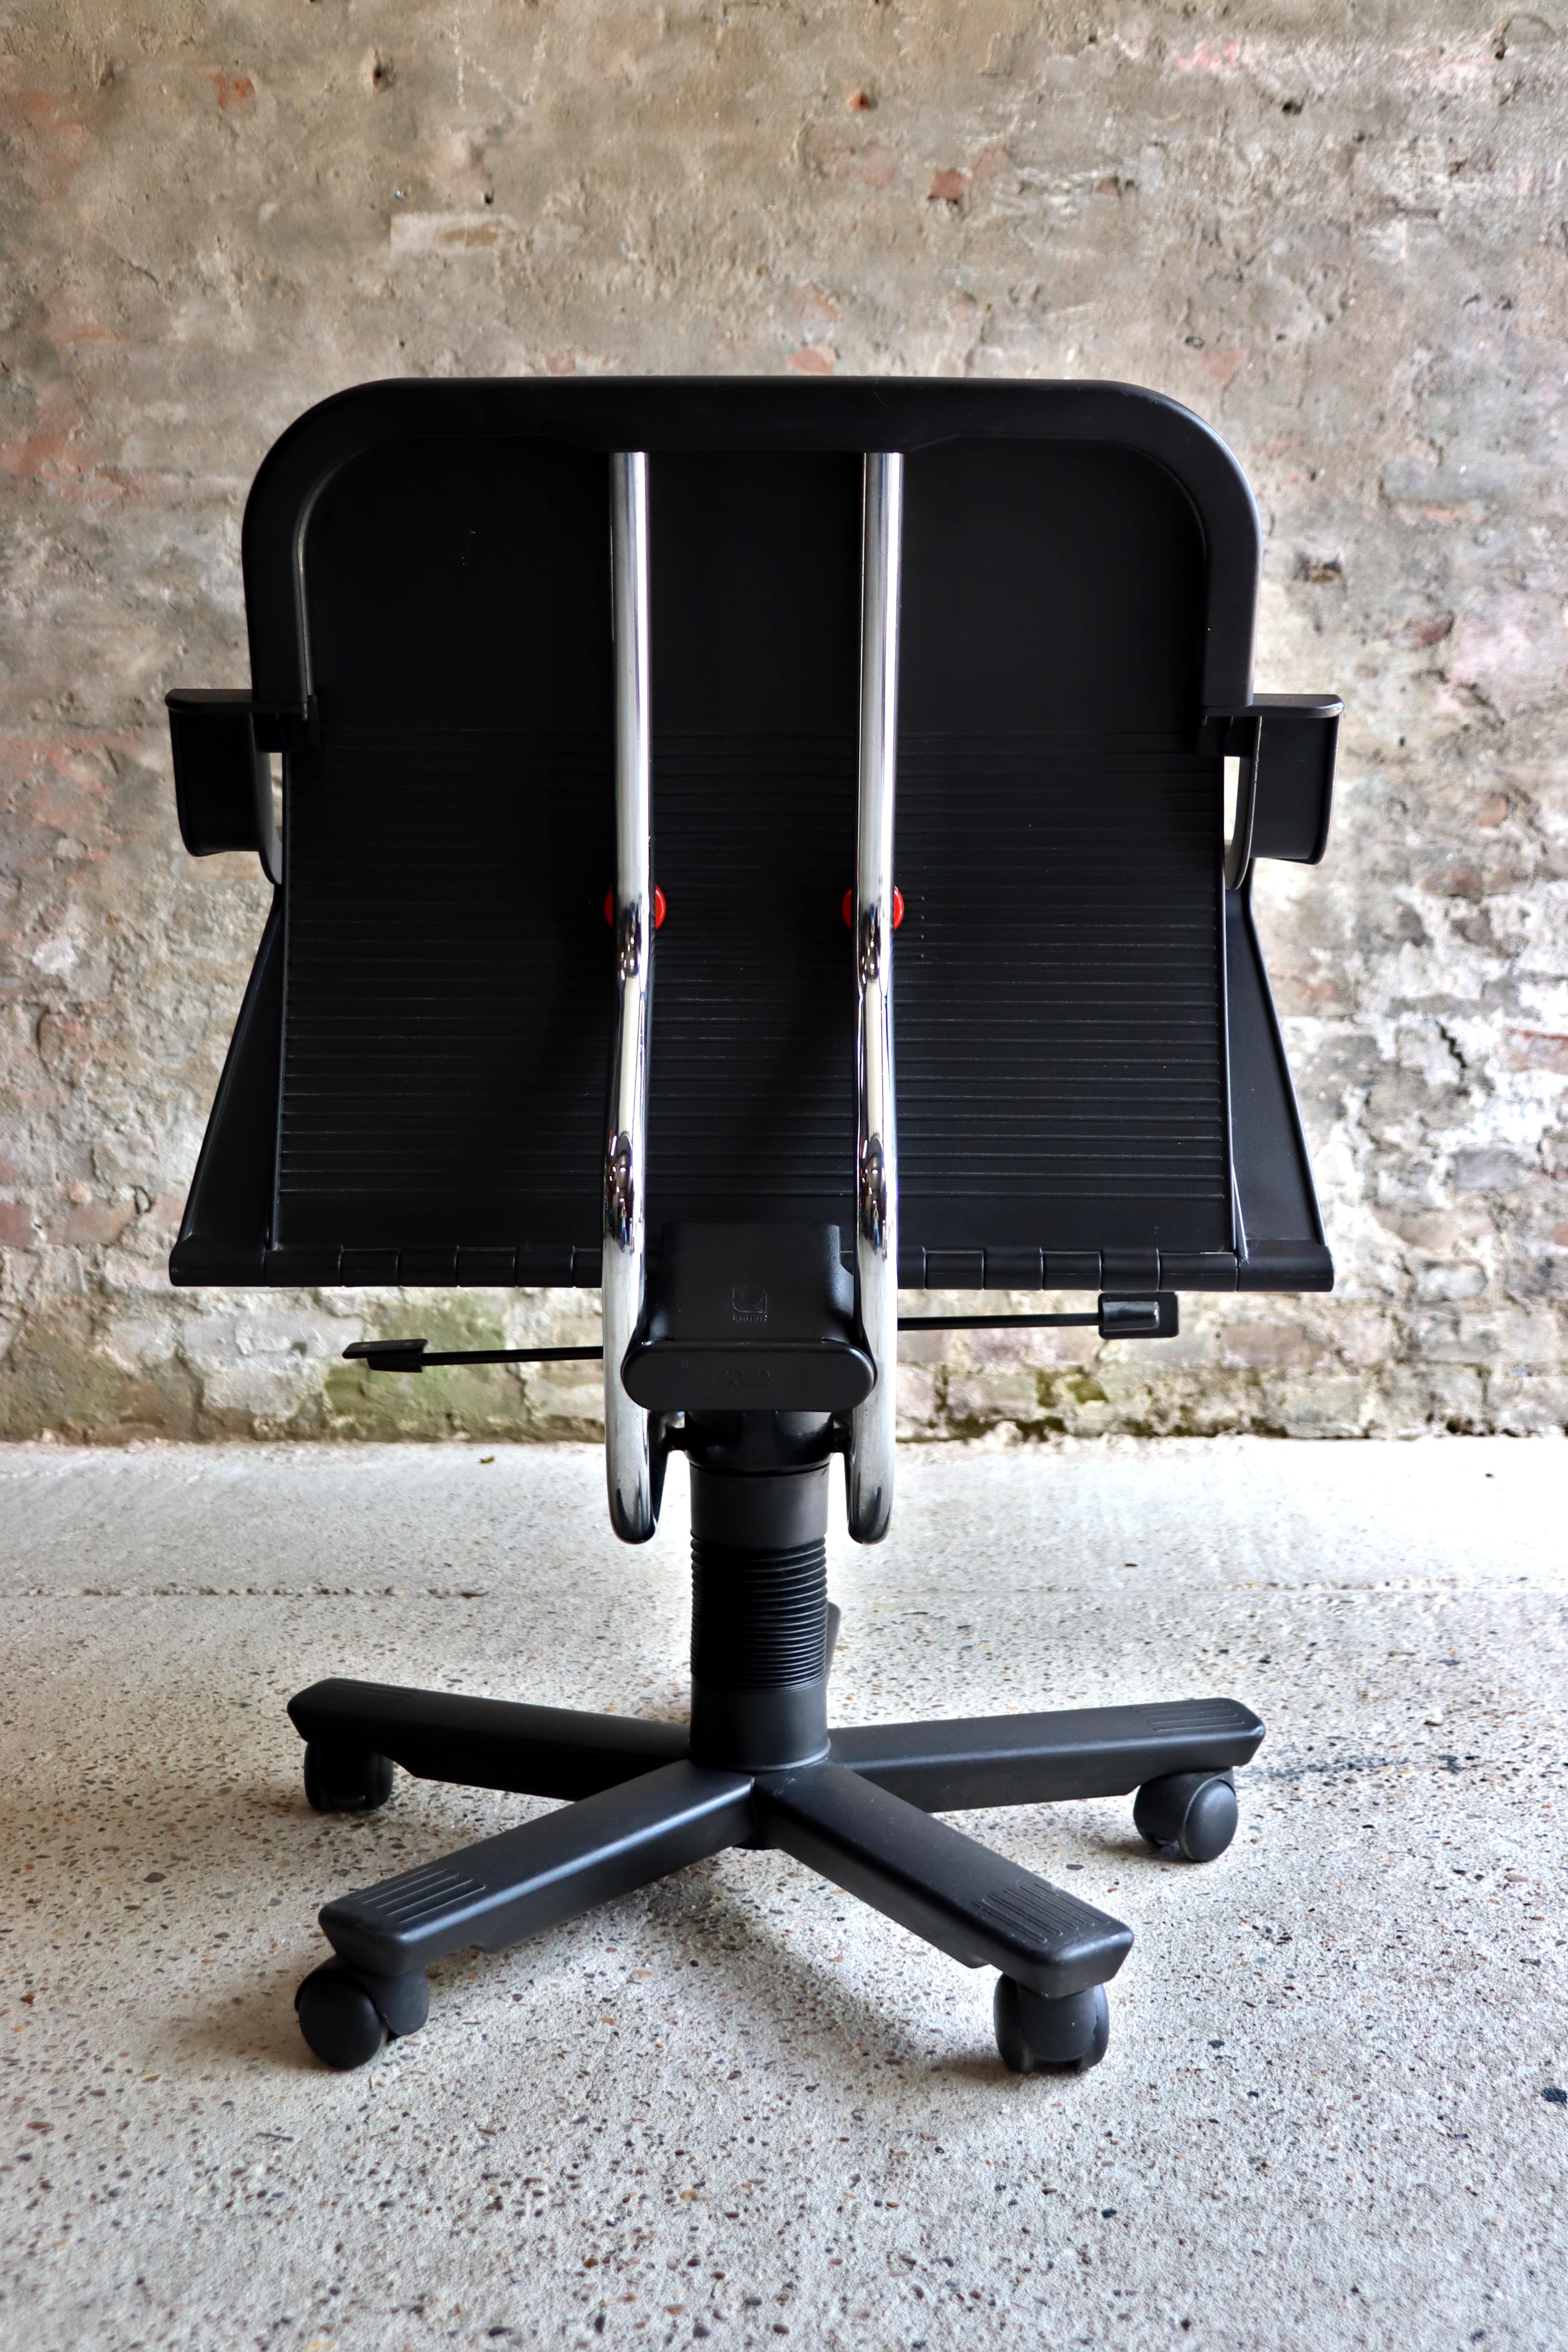 Aluminum Roberto Lucci – Italian Desk Chair – Paolo Orlandini – Lamm – 1980s For Sale